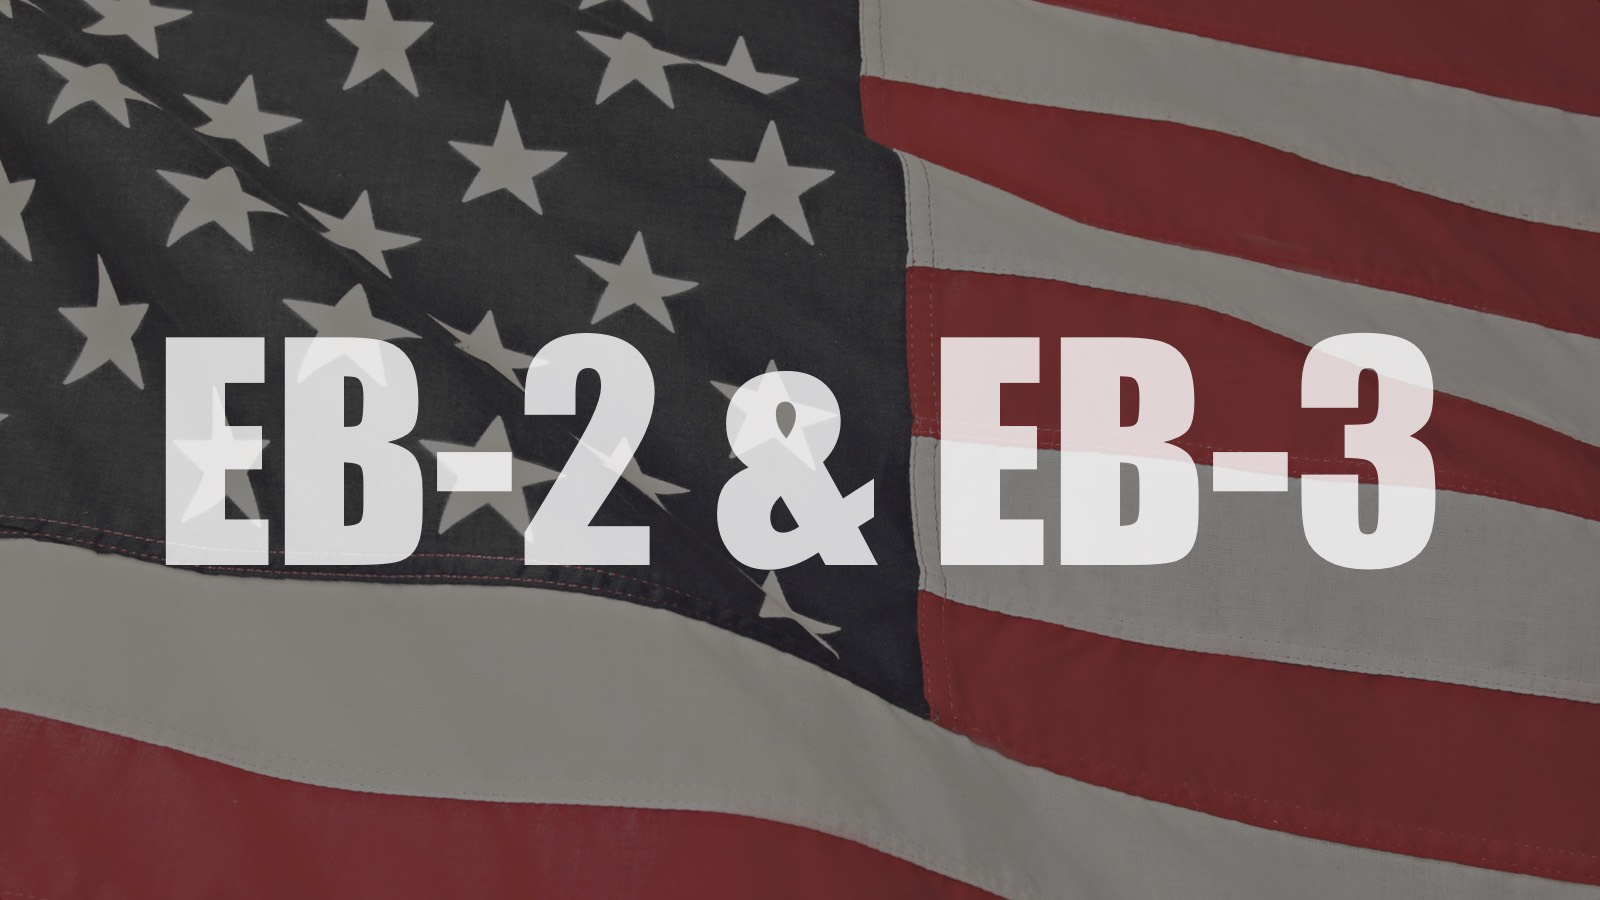 EB2 to EB3 Downgrade